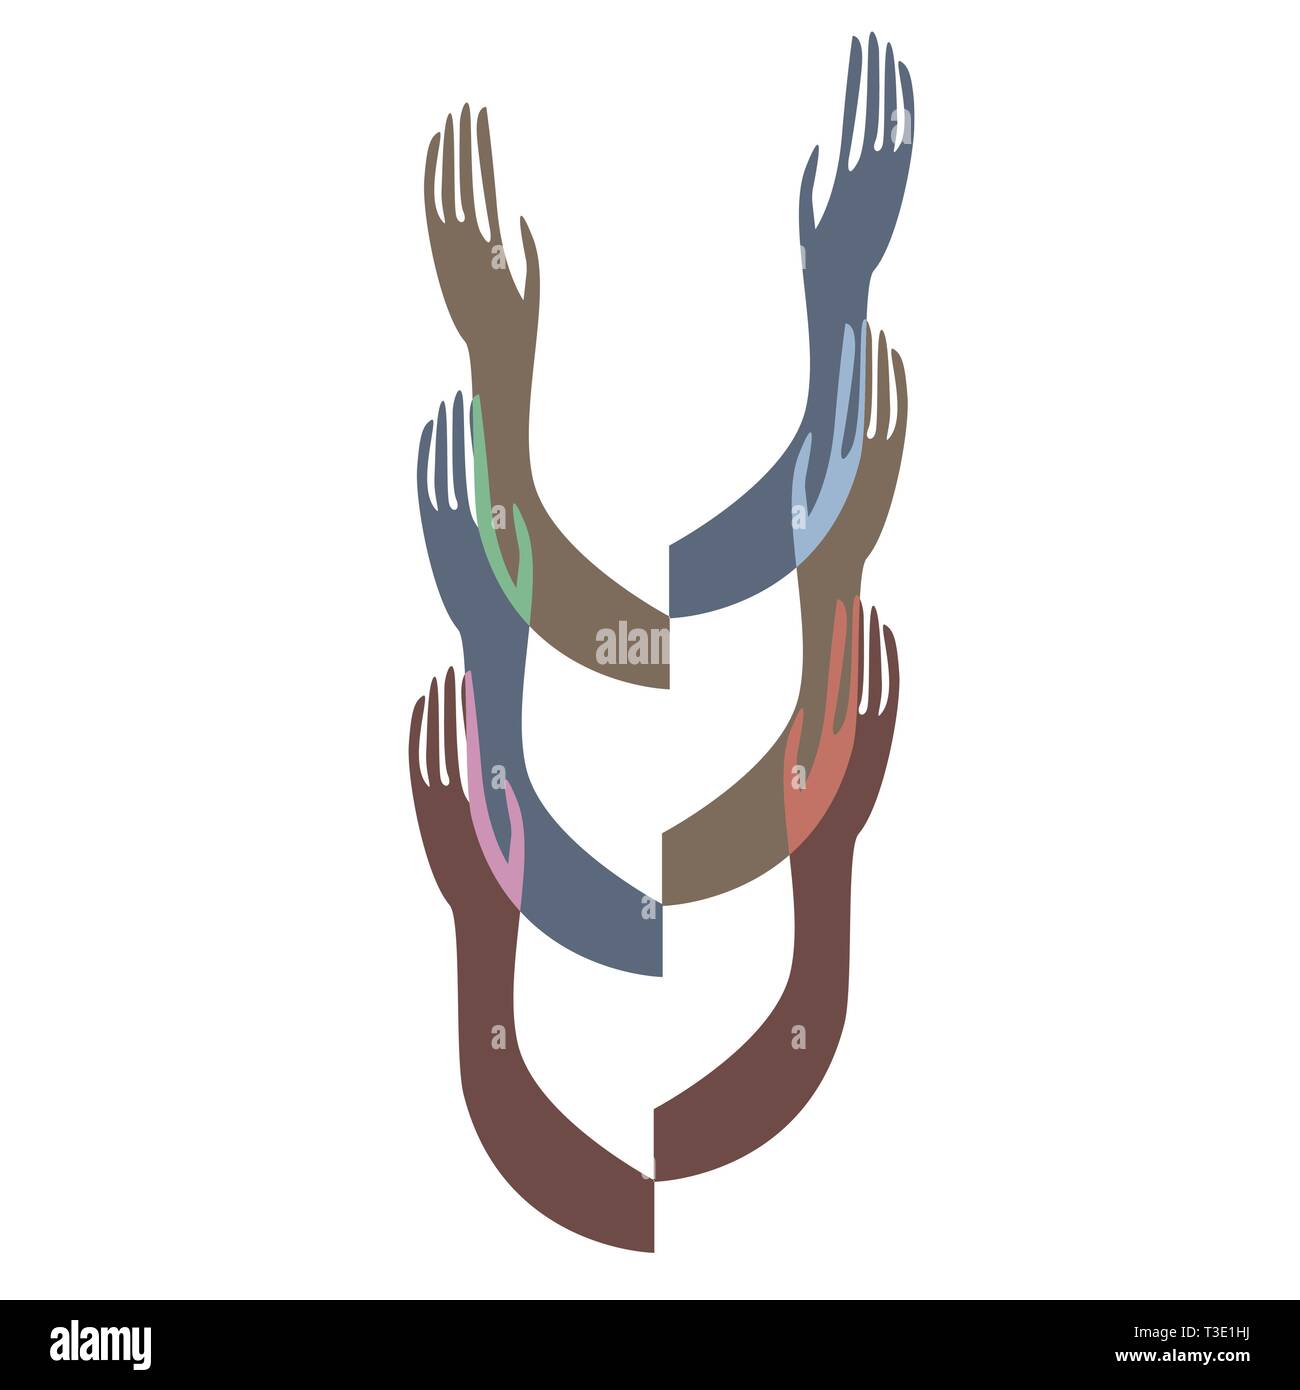 Farbenfrohe menschliche Hände. Konzeptdarstellung für Organisationshilfe, Umweltprojekt oder soziale Arbeit. Vektor EPS 10 Stock Vektor